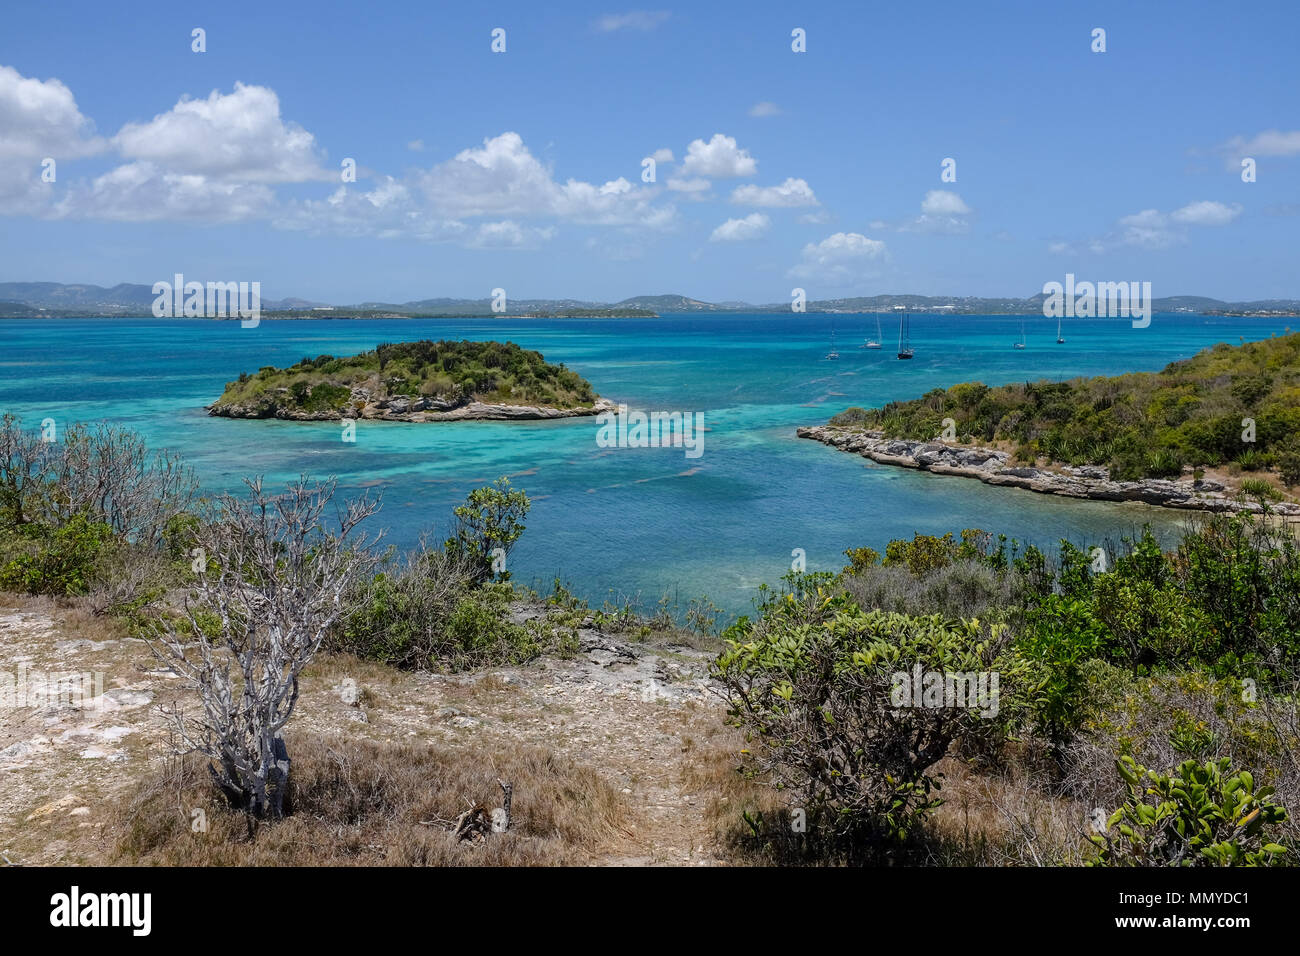 Antigua Inseln der Kleinen Antillen in der Karibik West Indies - Great Bird Island ist eine kleine Insel fast drei Kilometer entfernt liegt nord-östlich von Antigua M Stockfoto